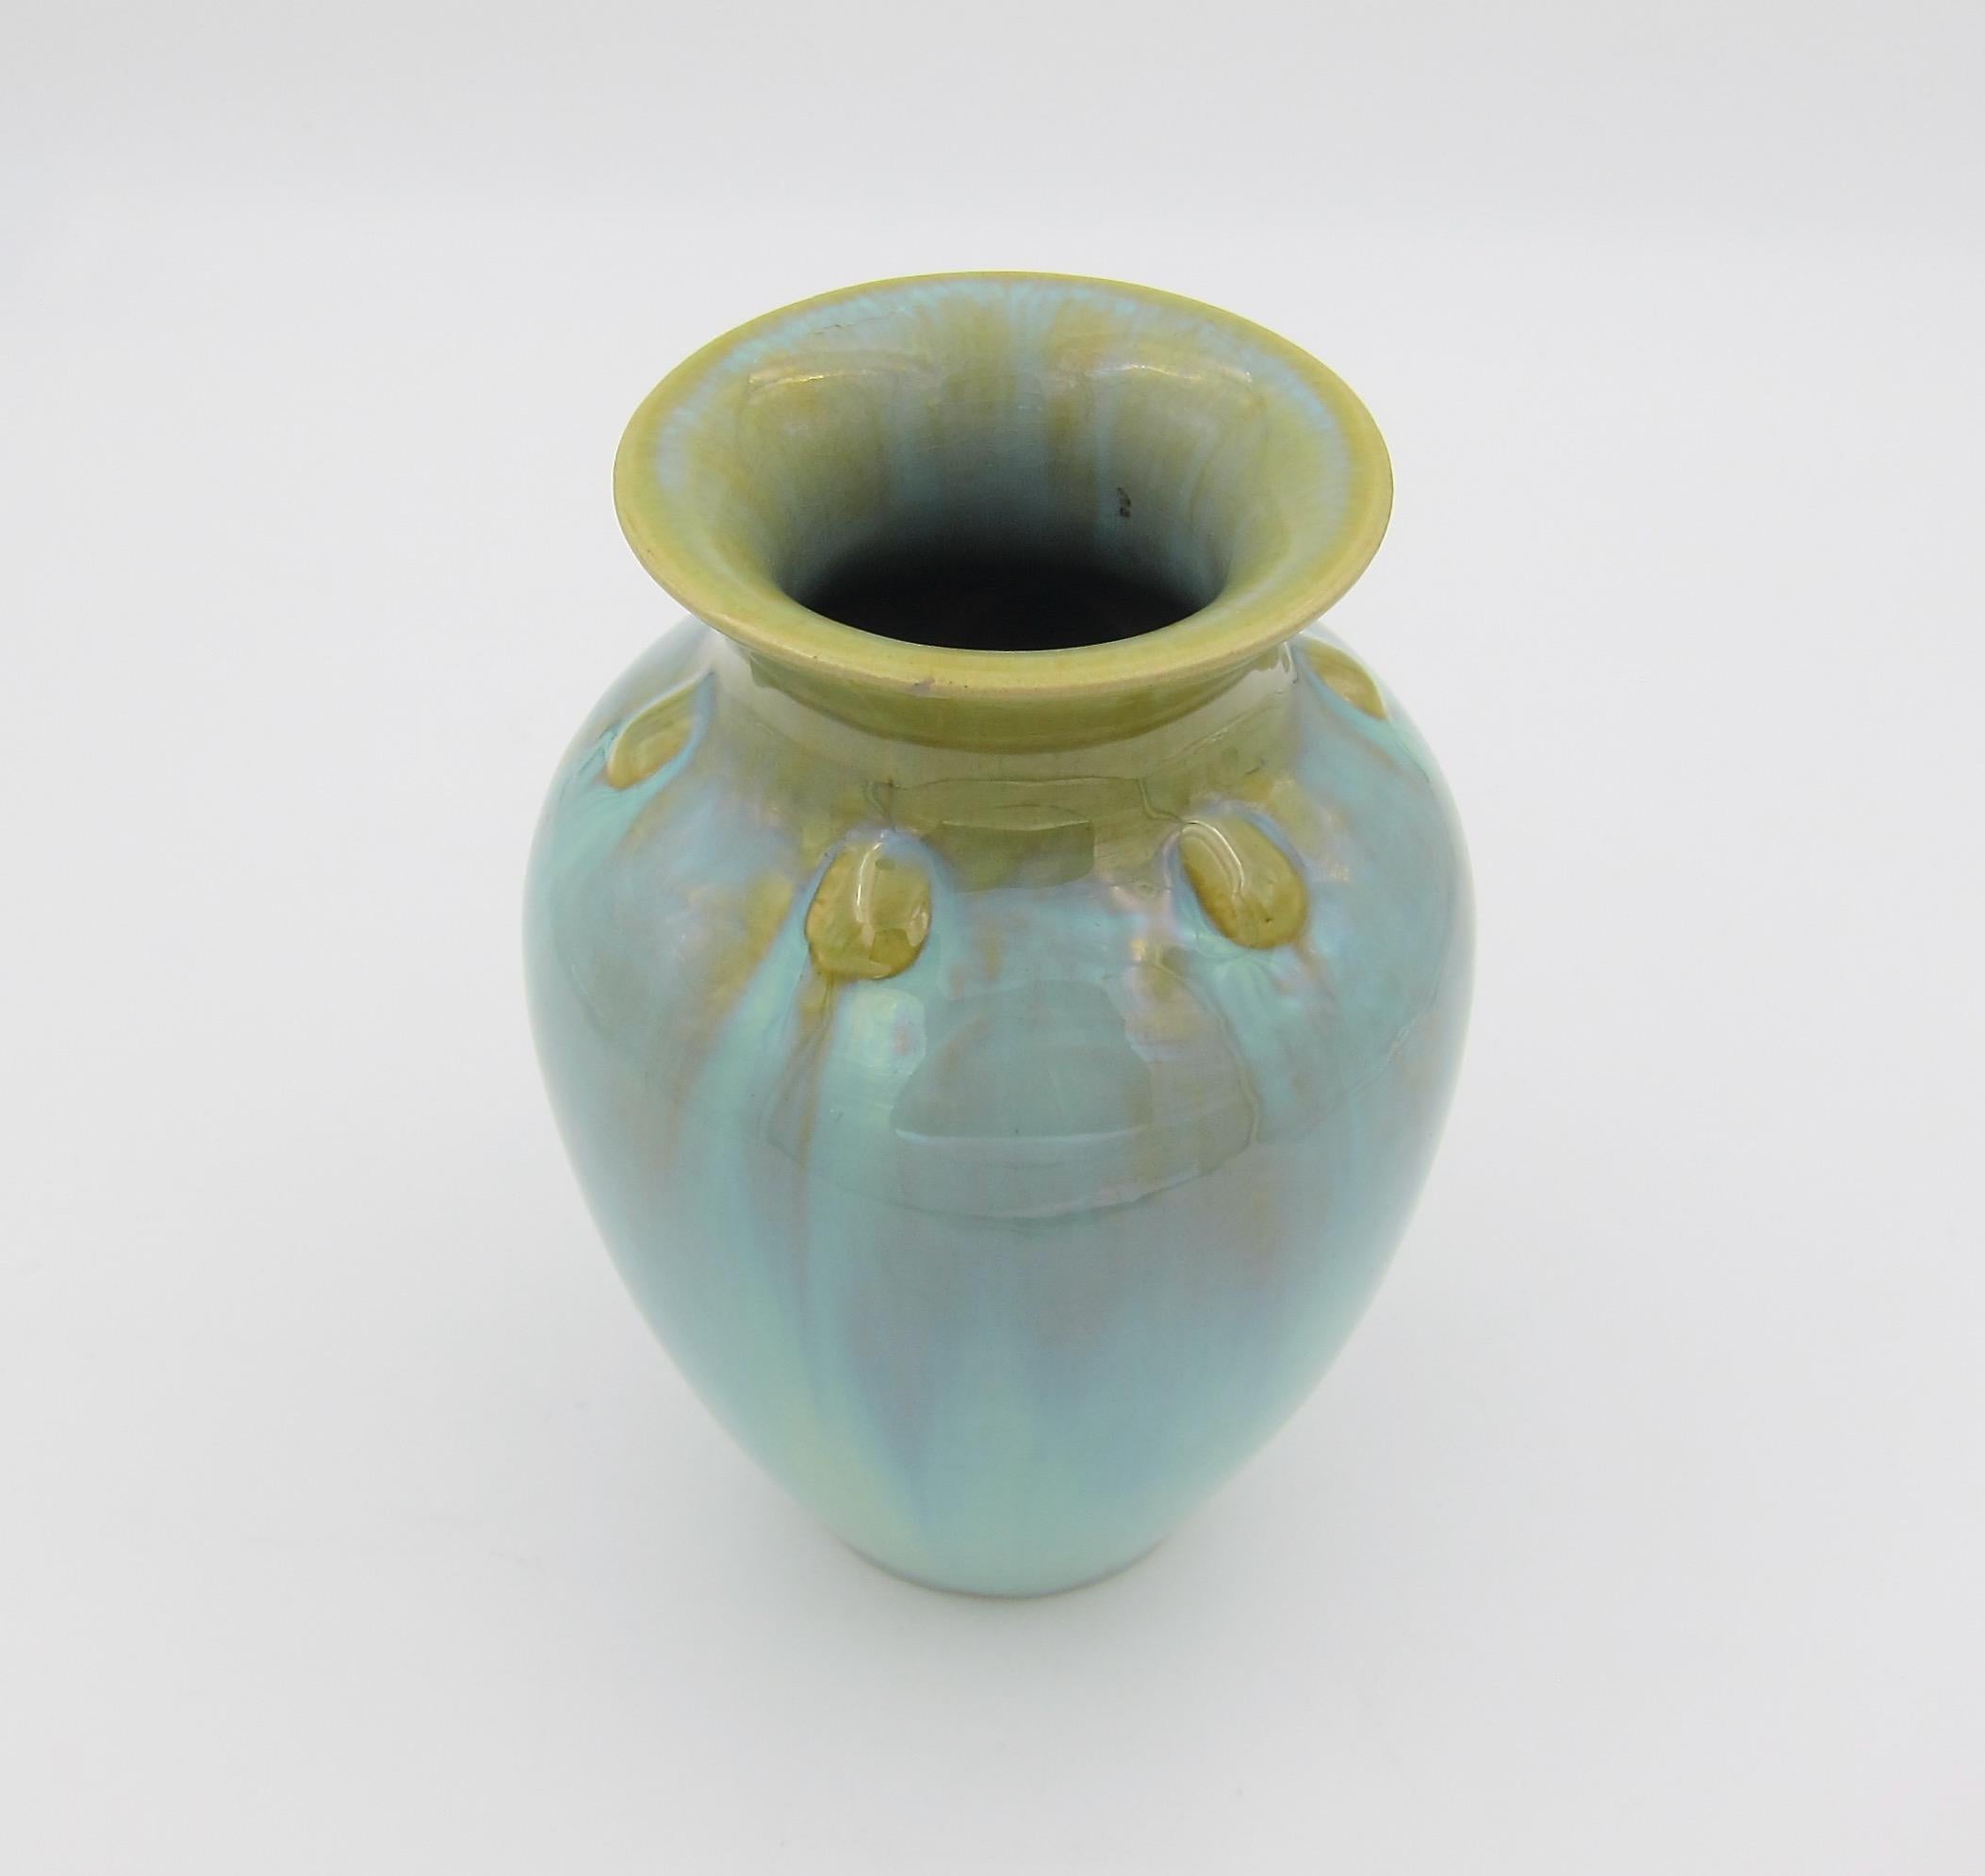 Vintage Fulper Pottery Vase with a Flambé Glaze 4